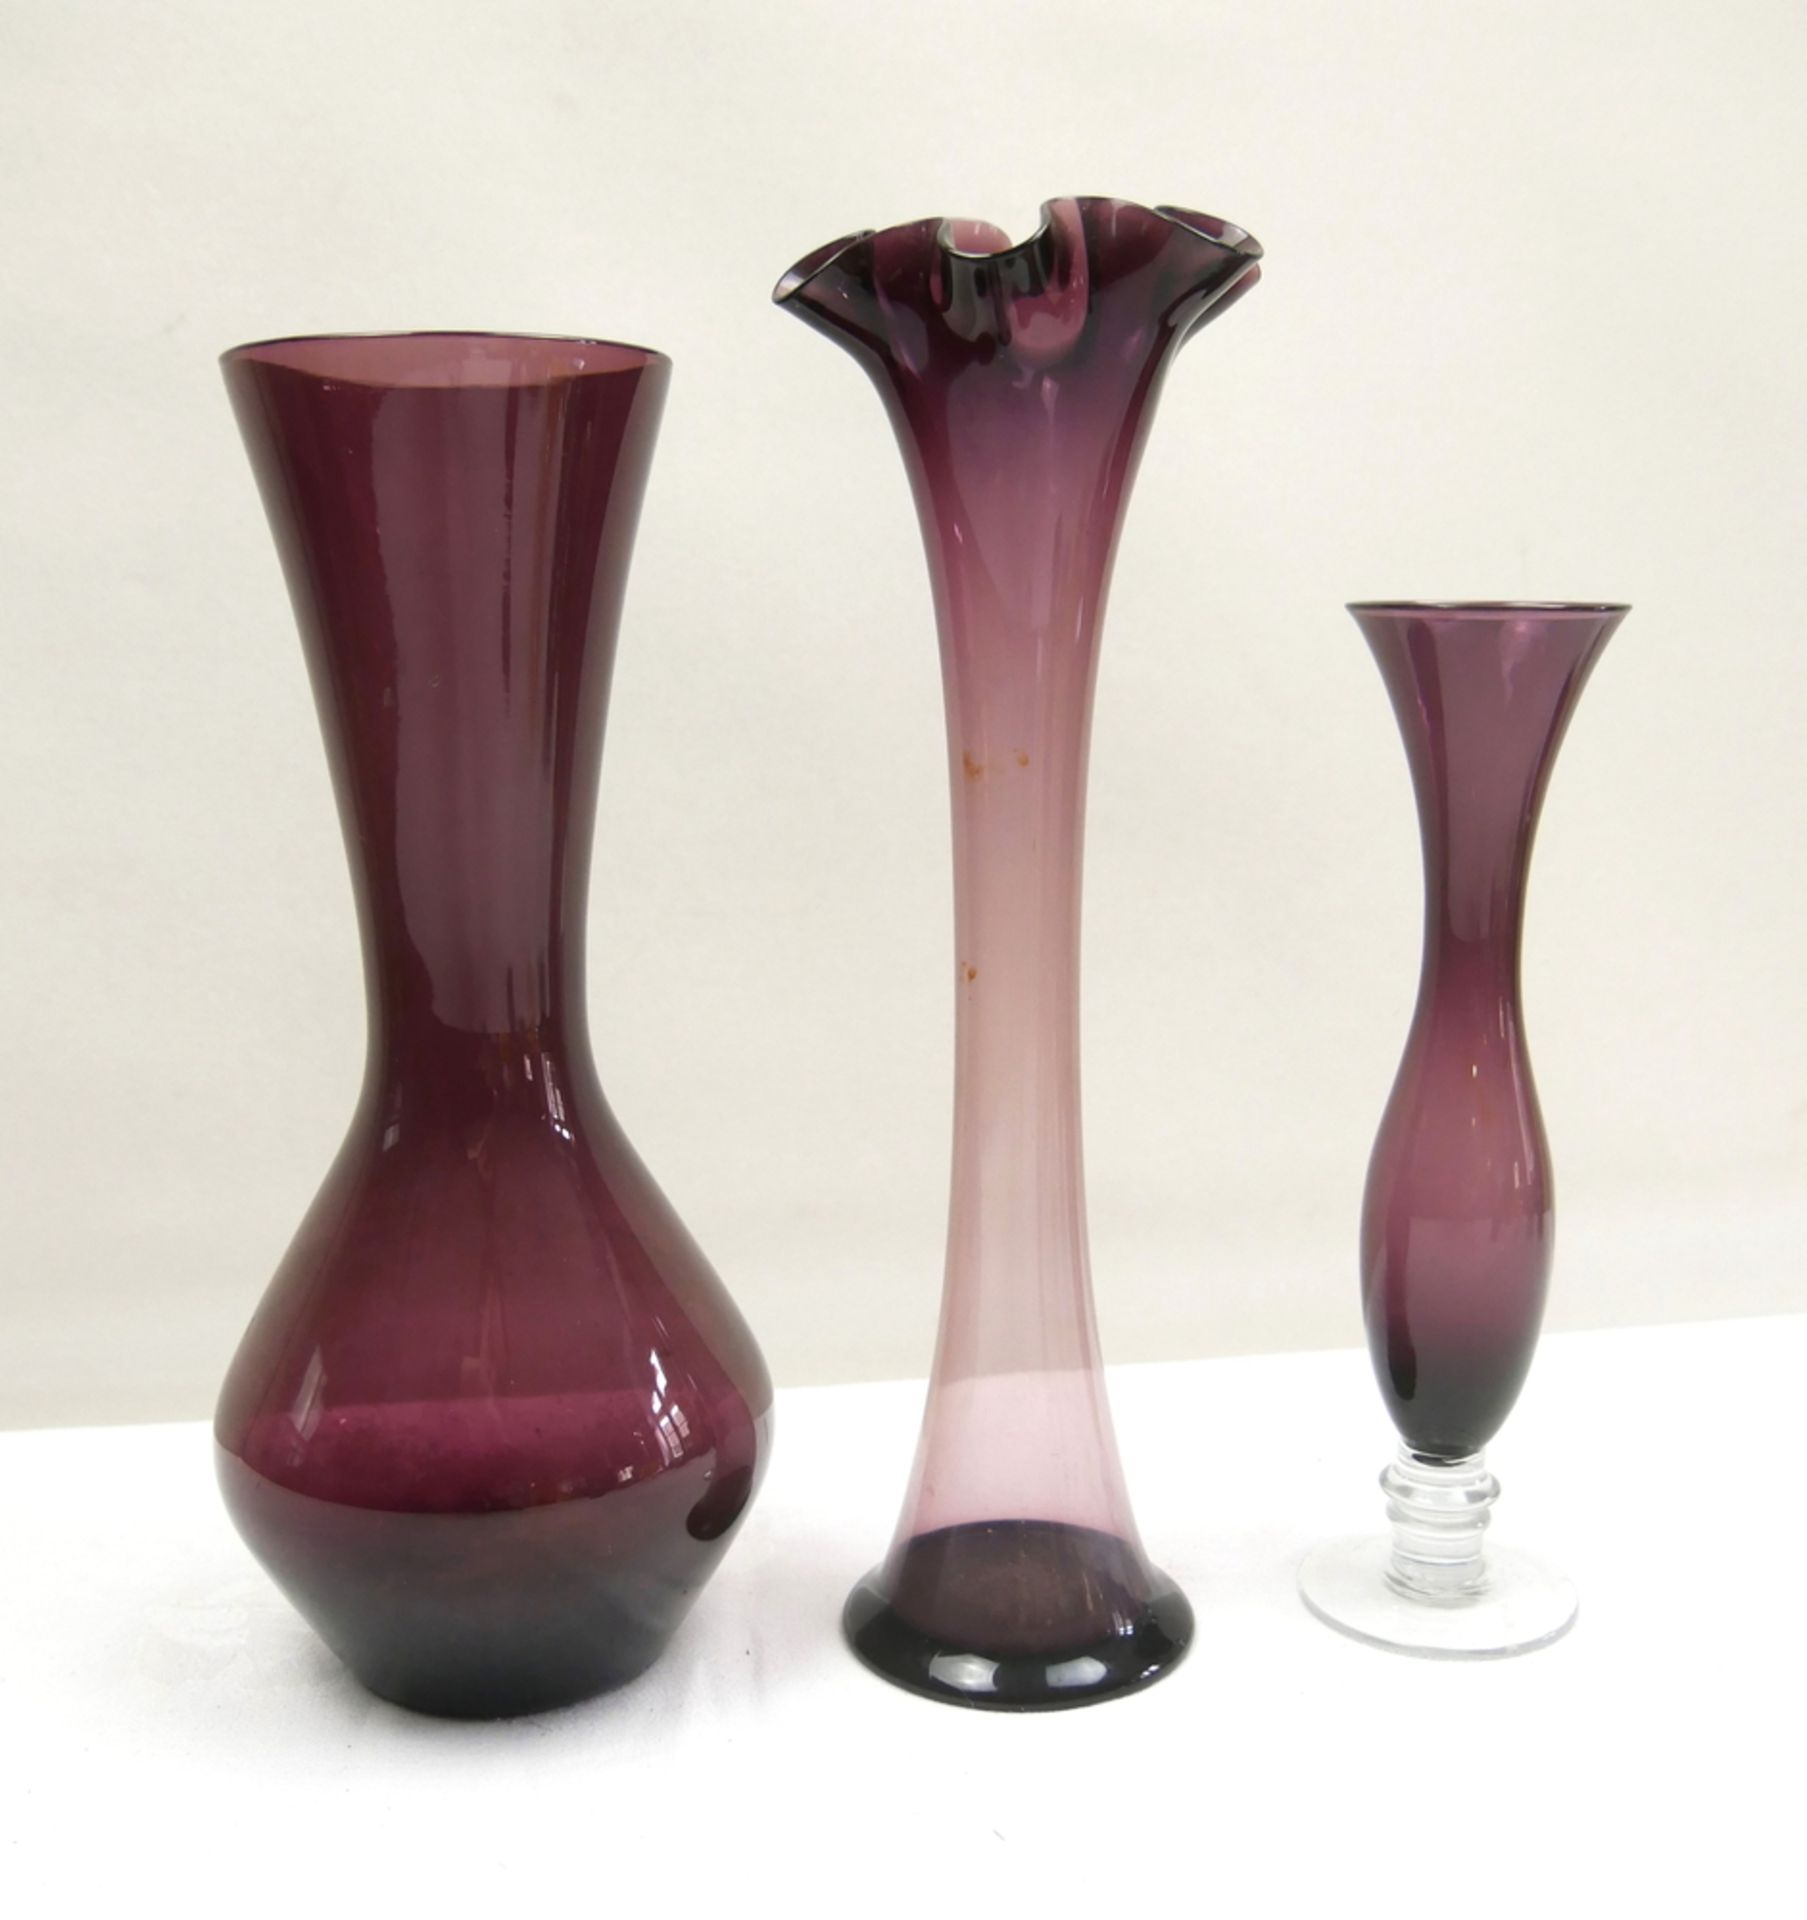 3 violettfarbene Glasvasen, verschiedene Größen und Formen